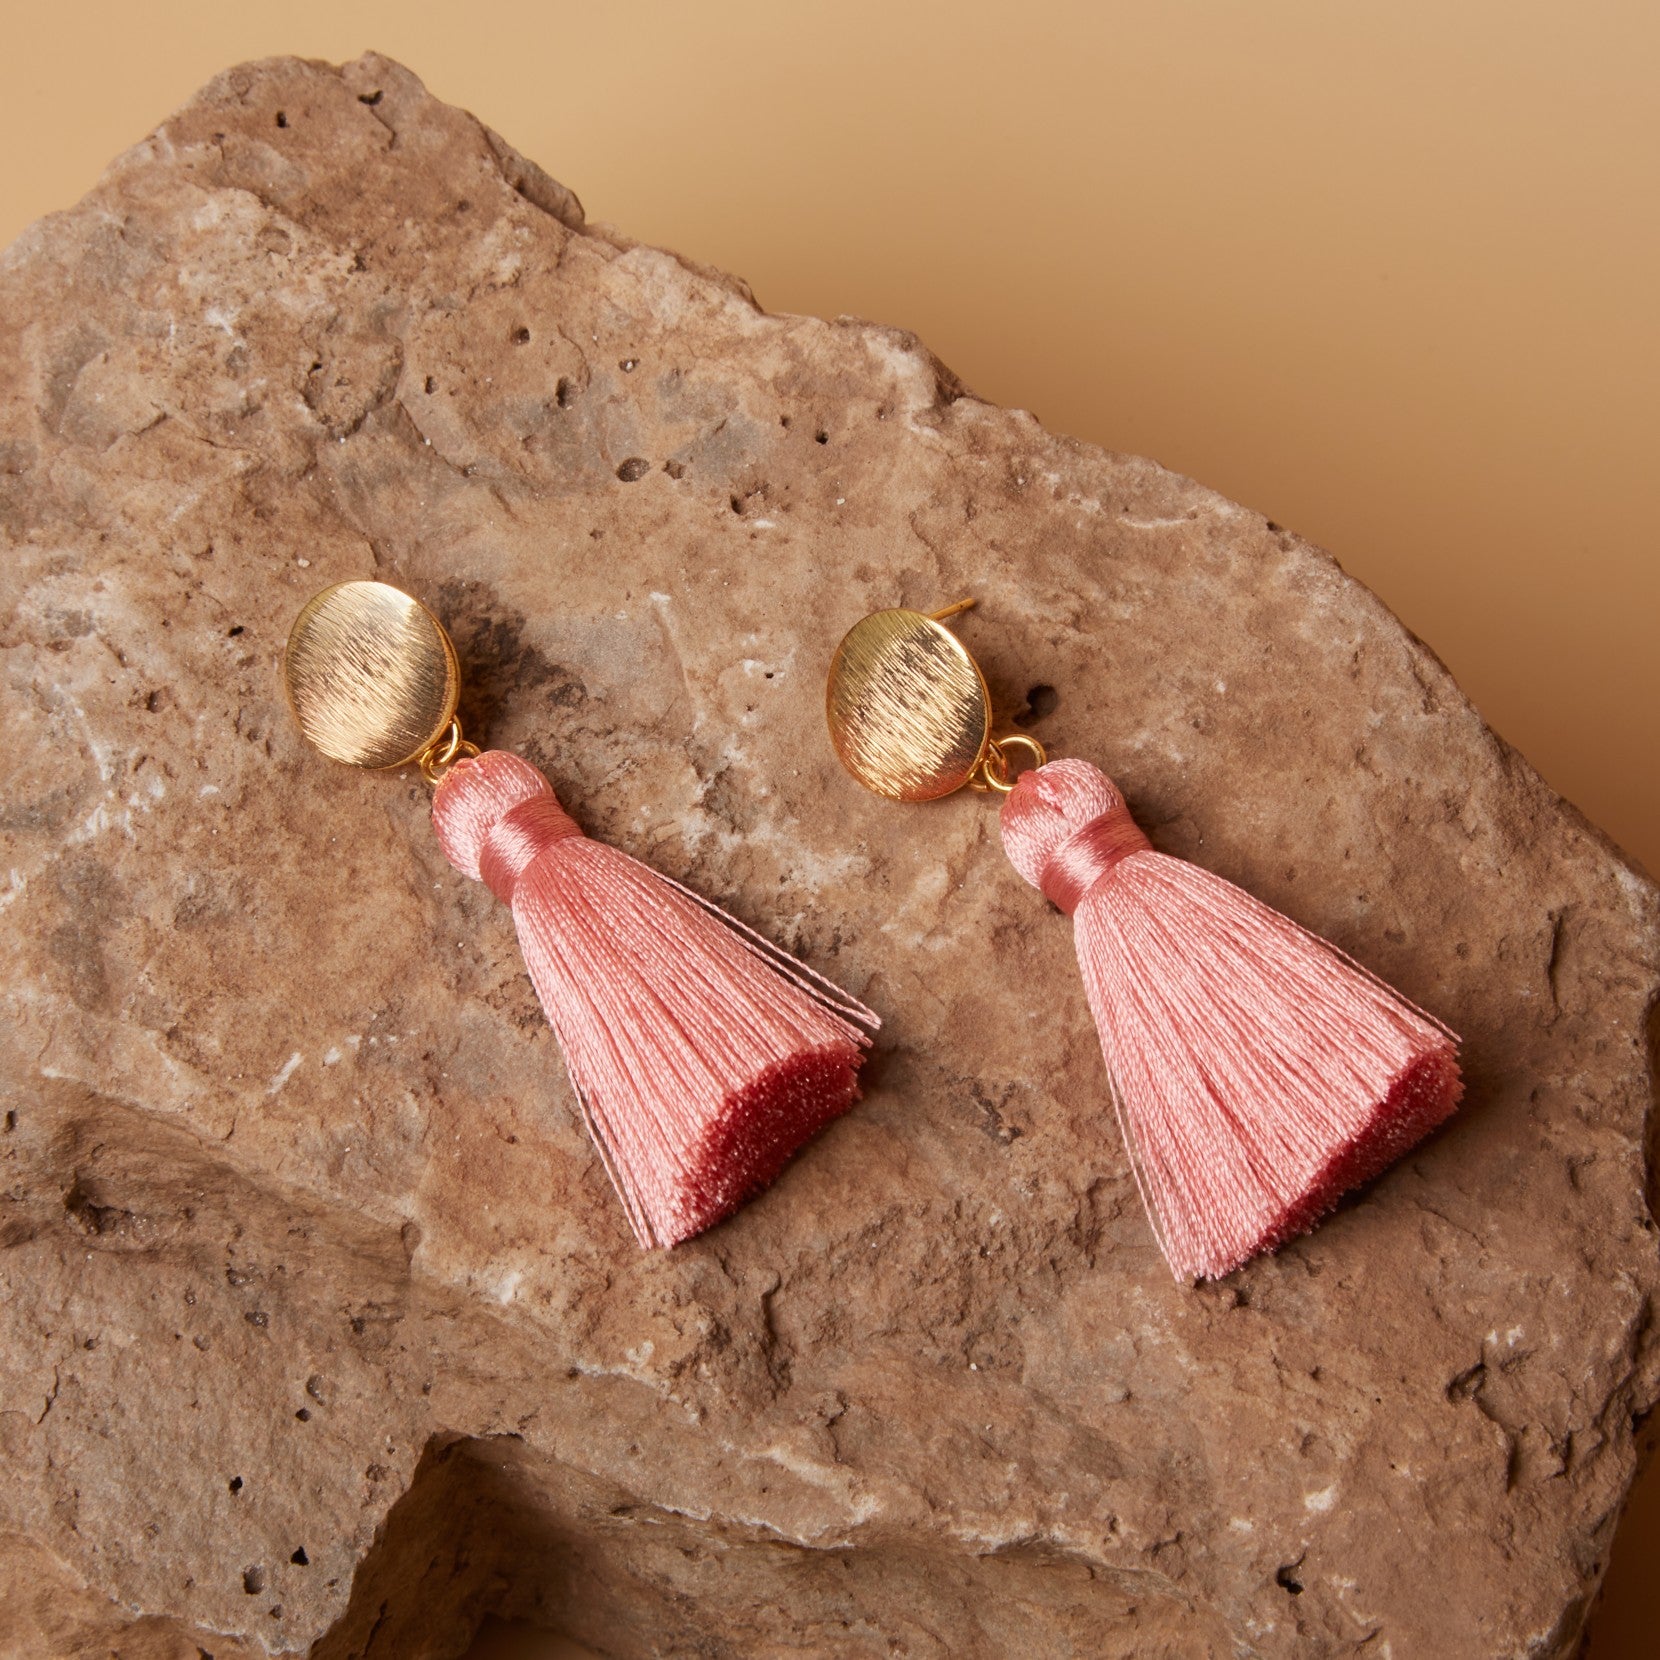 Halo // Pink Tassel Earrings